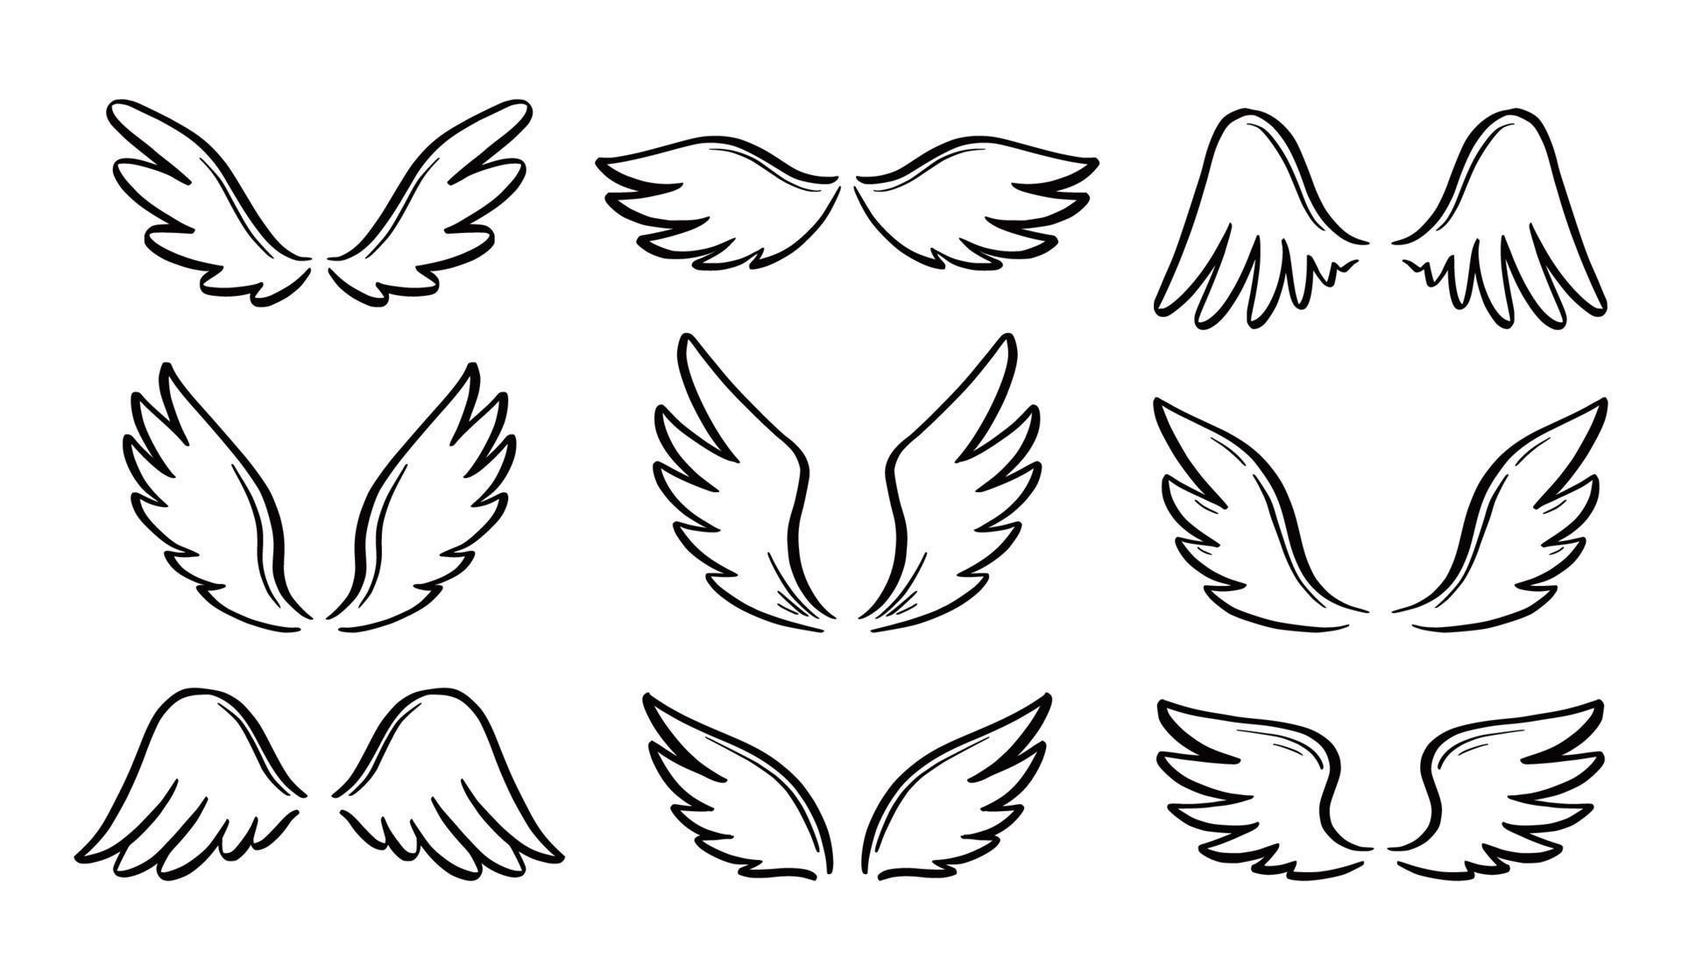 engel doodle vleugel set. hand getekend vector